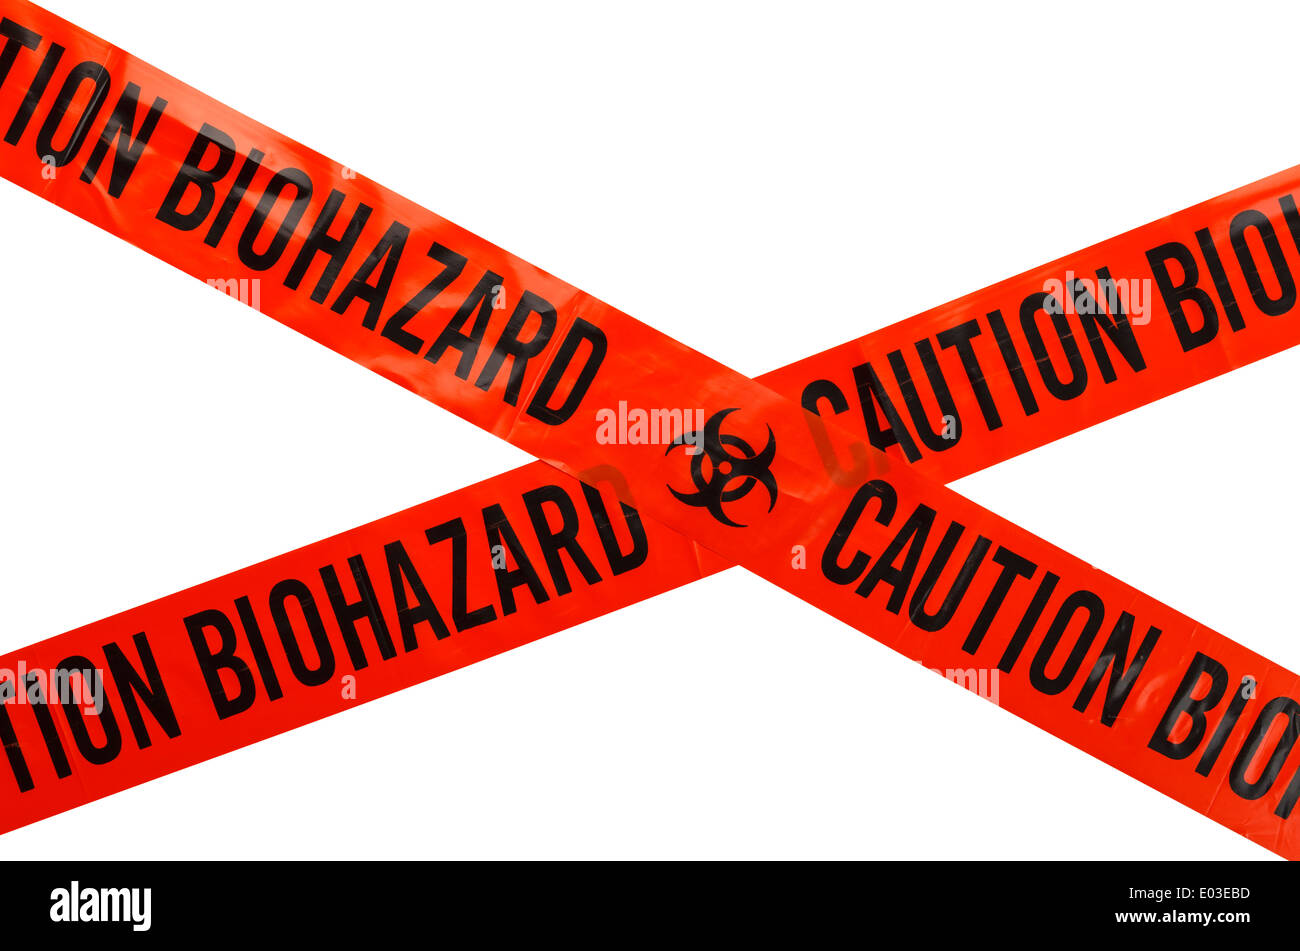 Naranja y Negro Biohazard cinta de precaución. Aislado sobre fondo blanco. Foto de stock